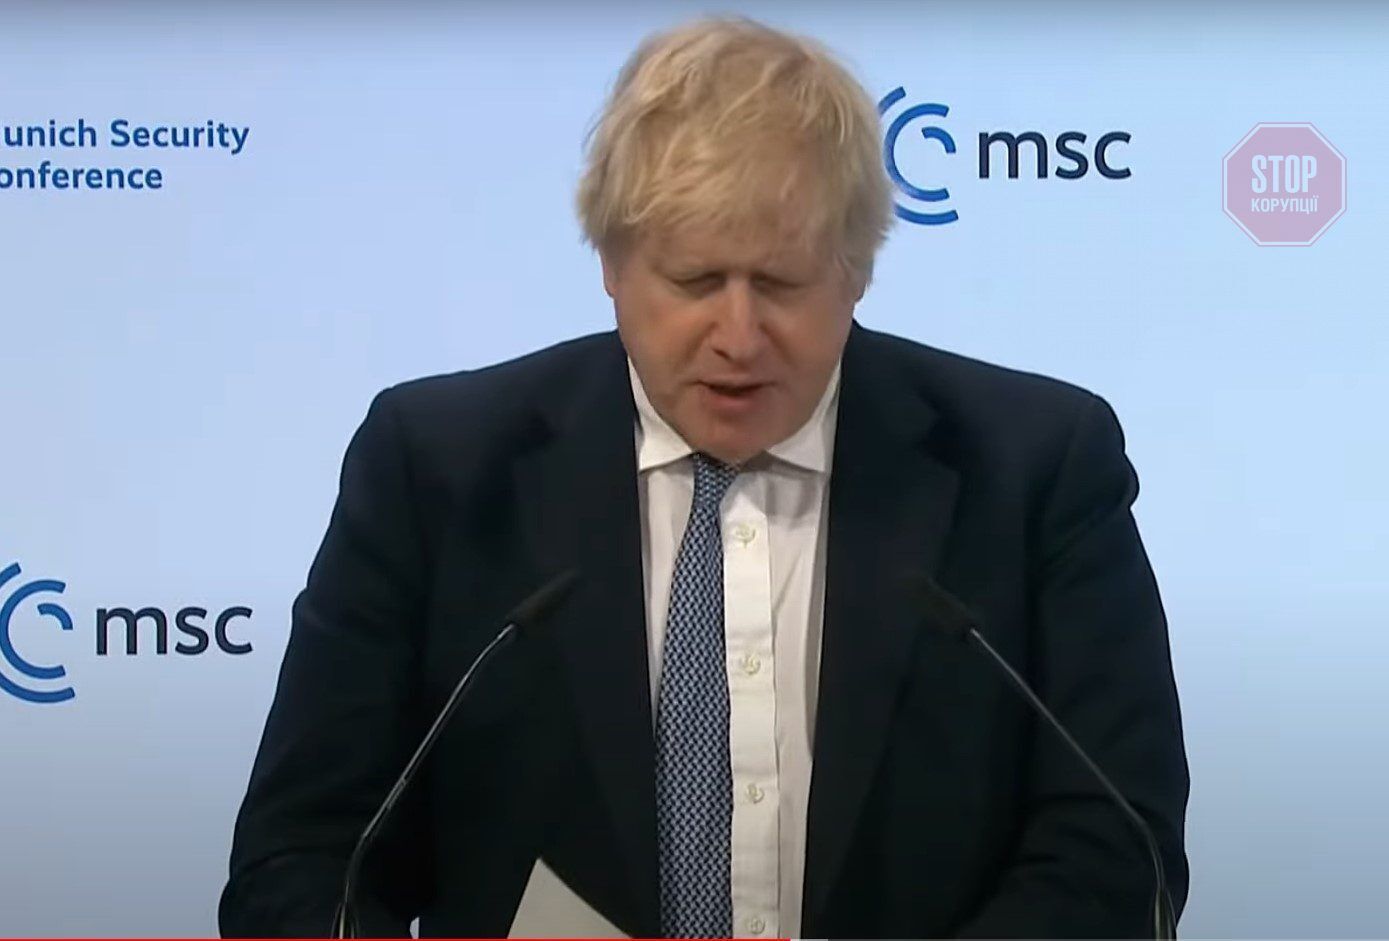  Борис Джонсон, Прем'єр-міністр Великобританії - виступ під час Мюнхенської безпекової конференції 19 лютого. Фото: скрін відеотрансляції